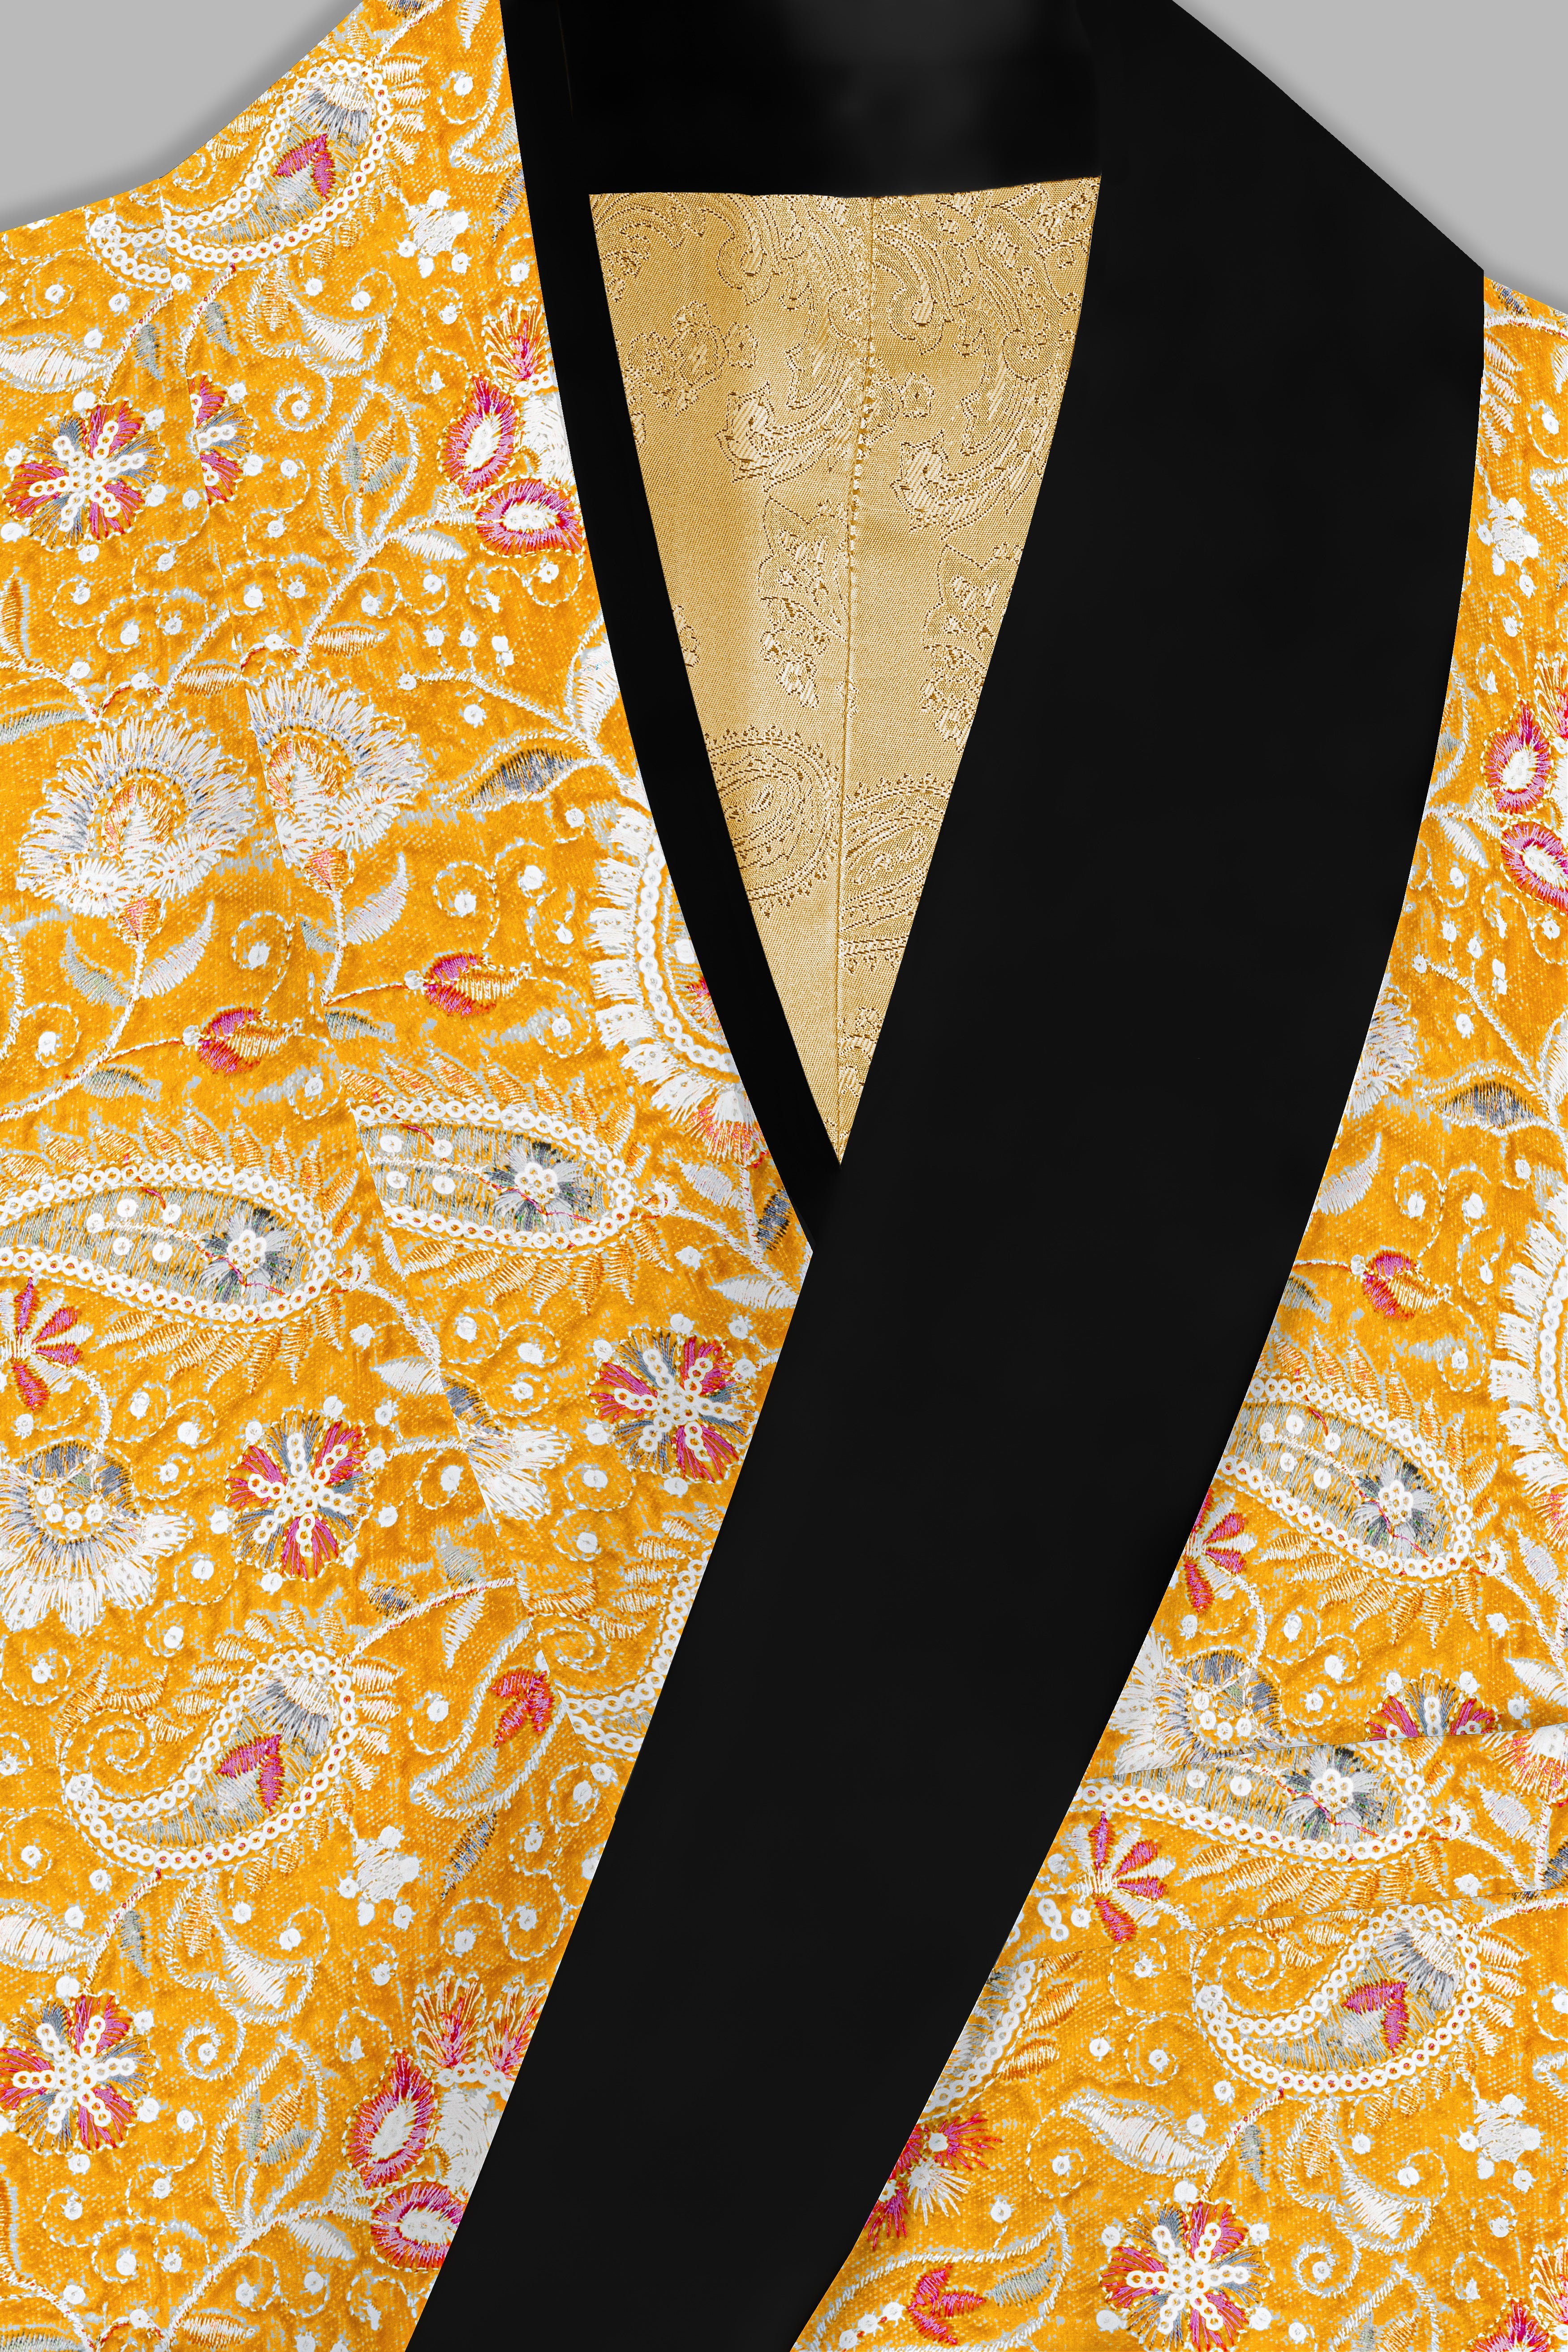 Firebush Yellow Velvet Floral Thread Embroidered Tuxedo Blazer